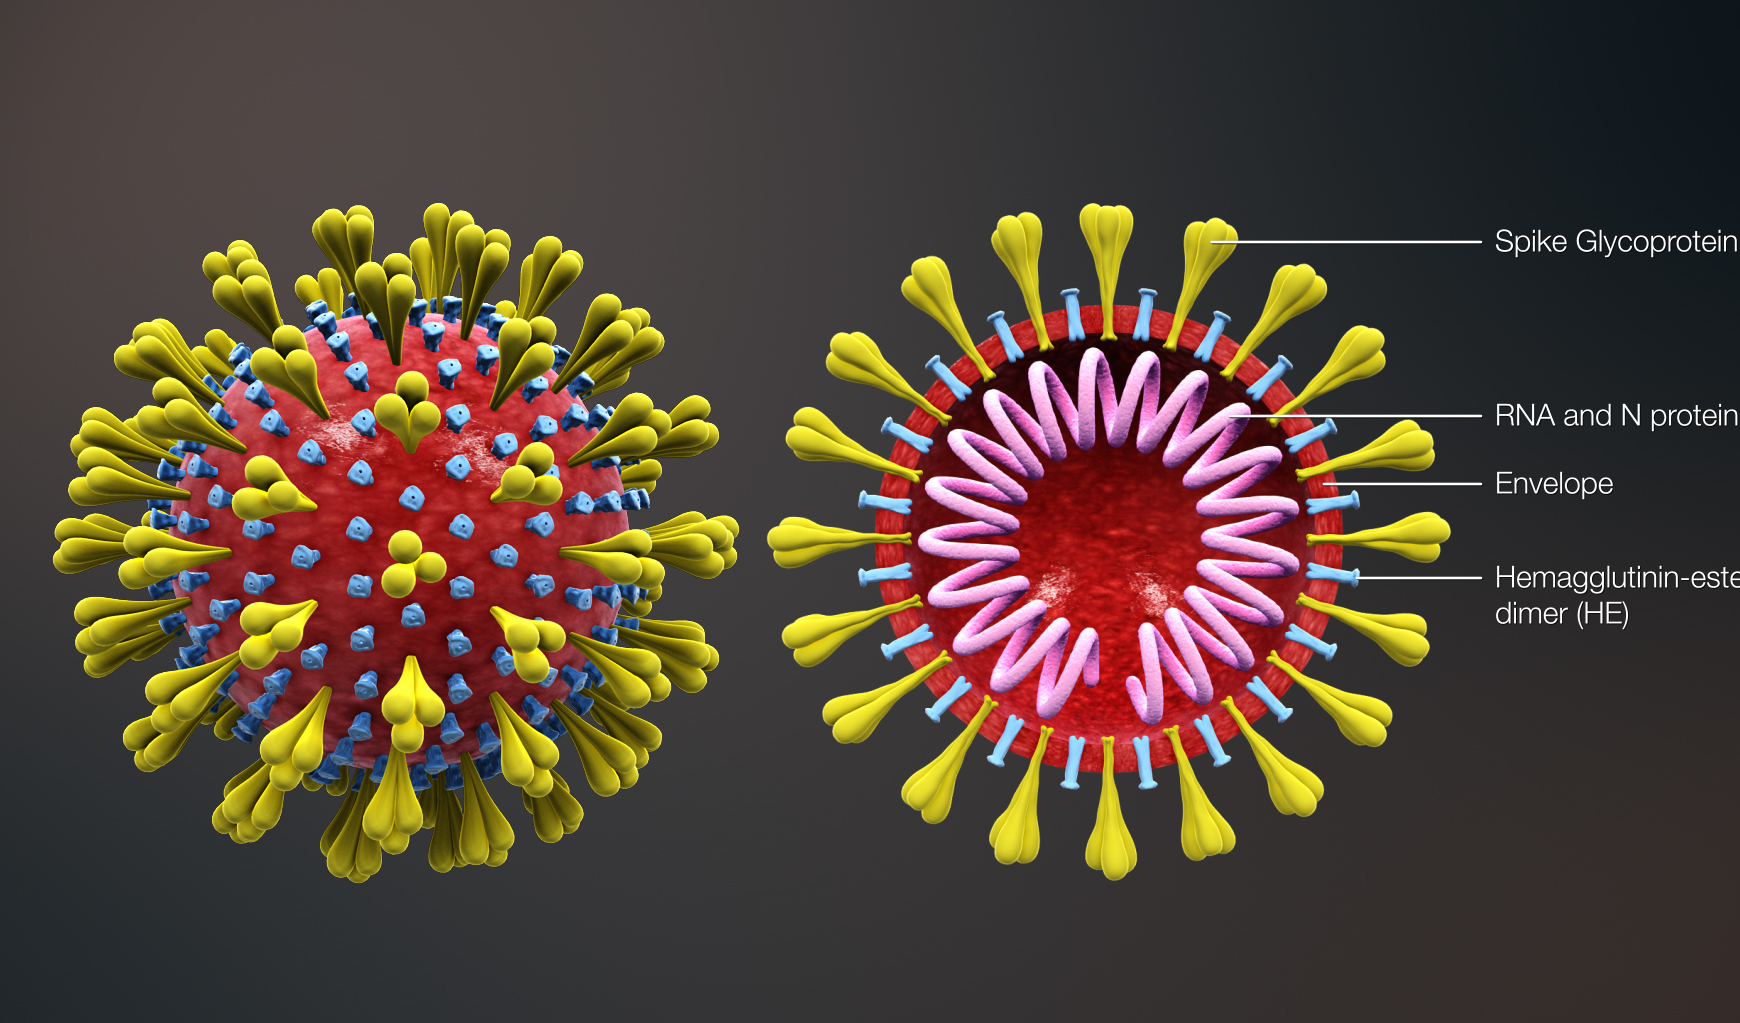 Emergenza coronavirus, priorità tutelare la salute e rallentare il contagio